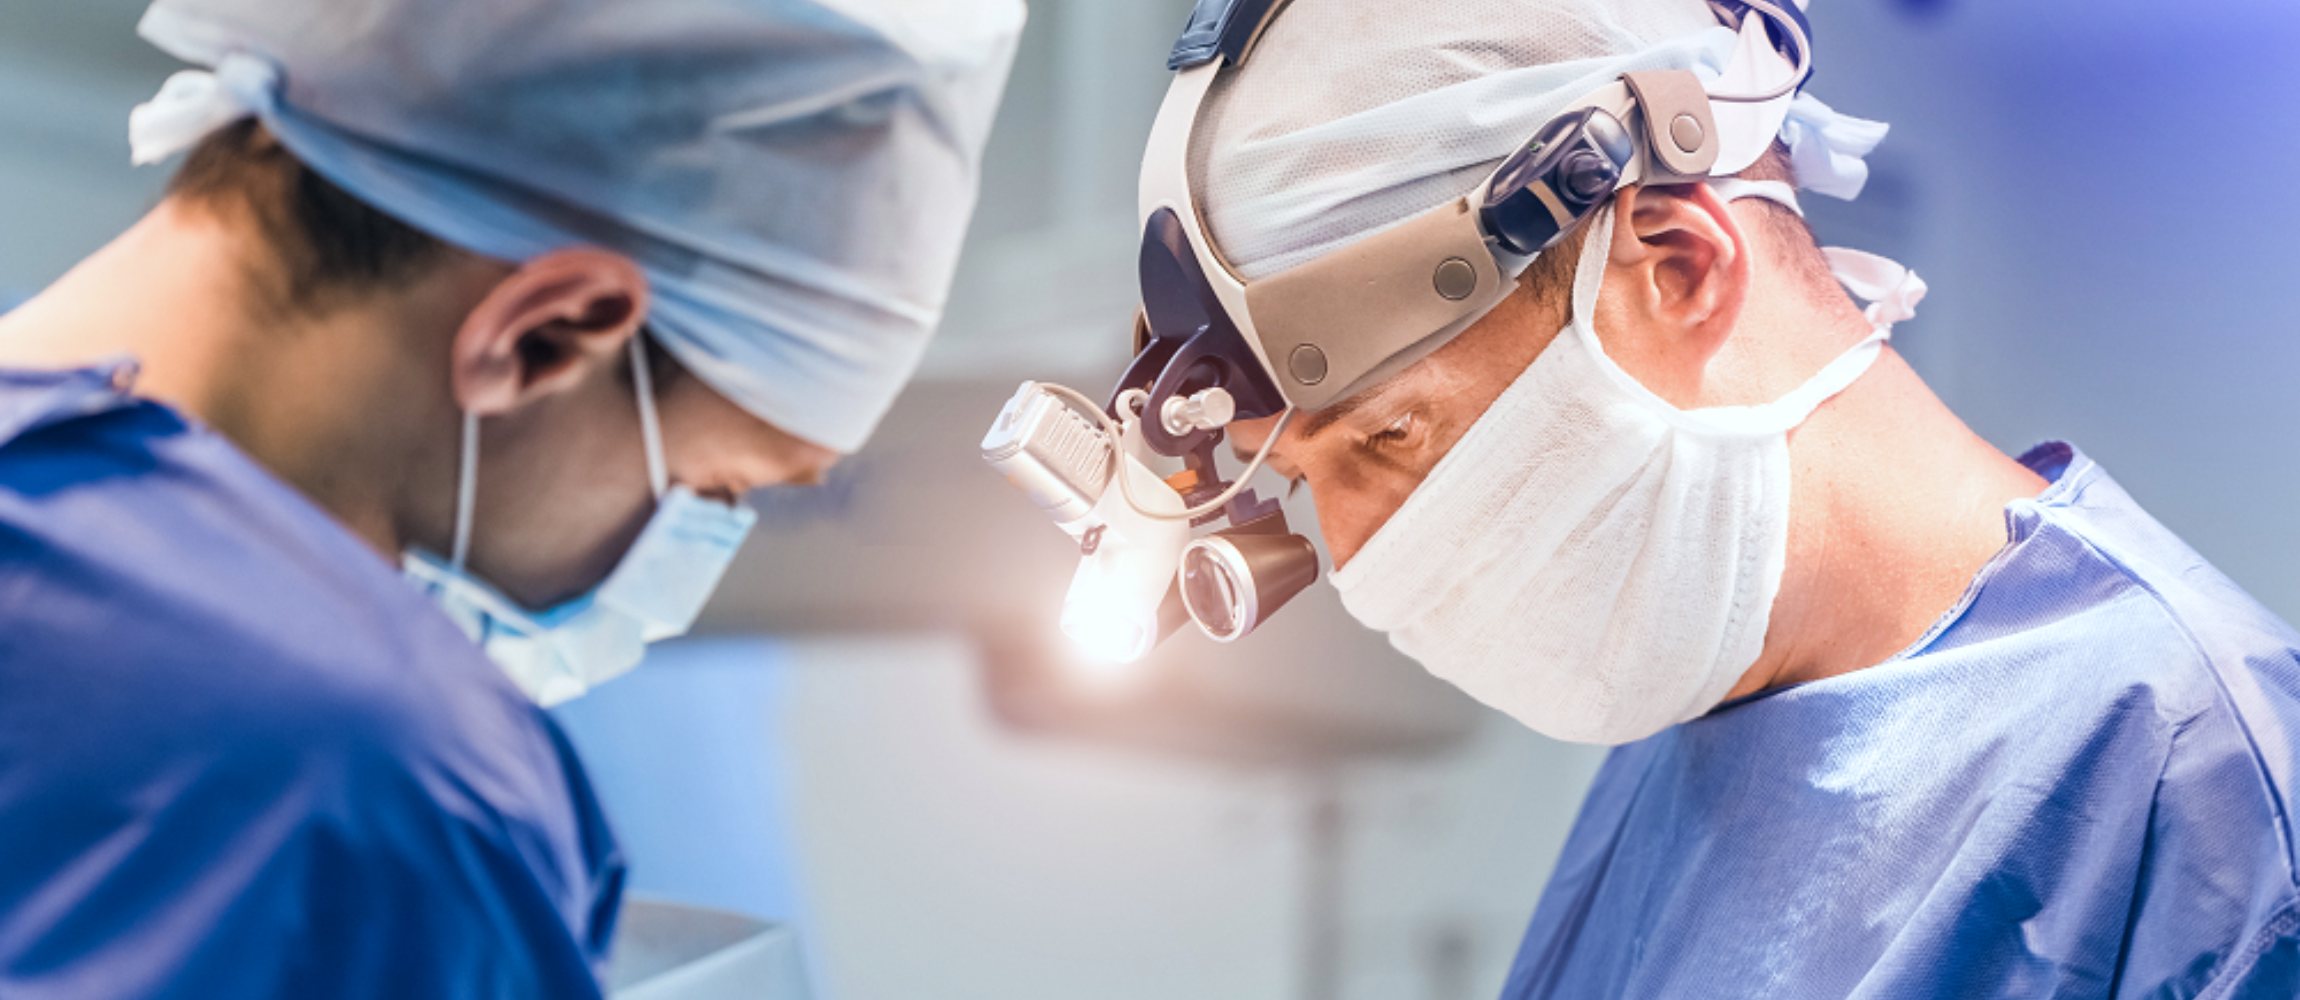 Kirurgia kirurgiakliinik operatsioon lõikus narkoos laserravi bariaatria plastiline kirurgia rinnaoperatsioon neerukivid